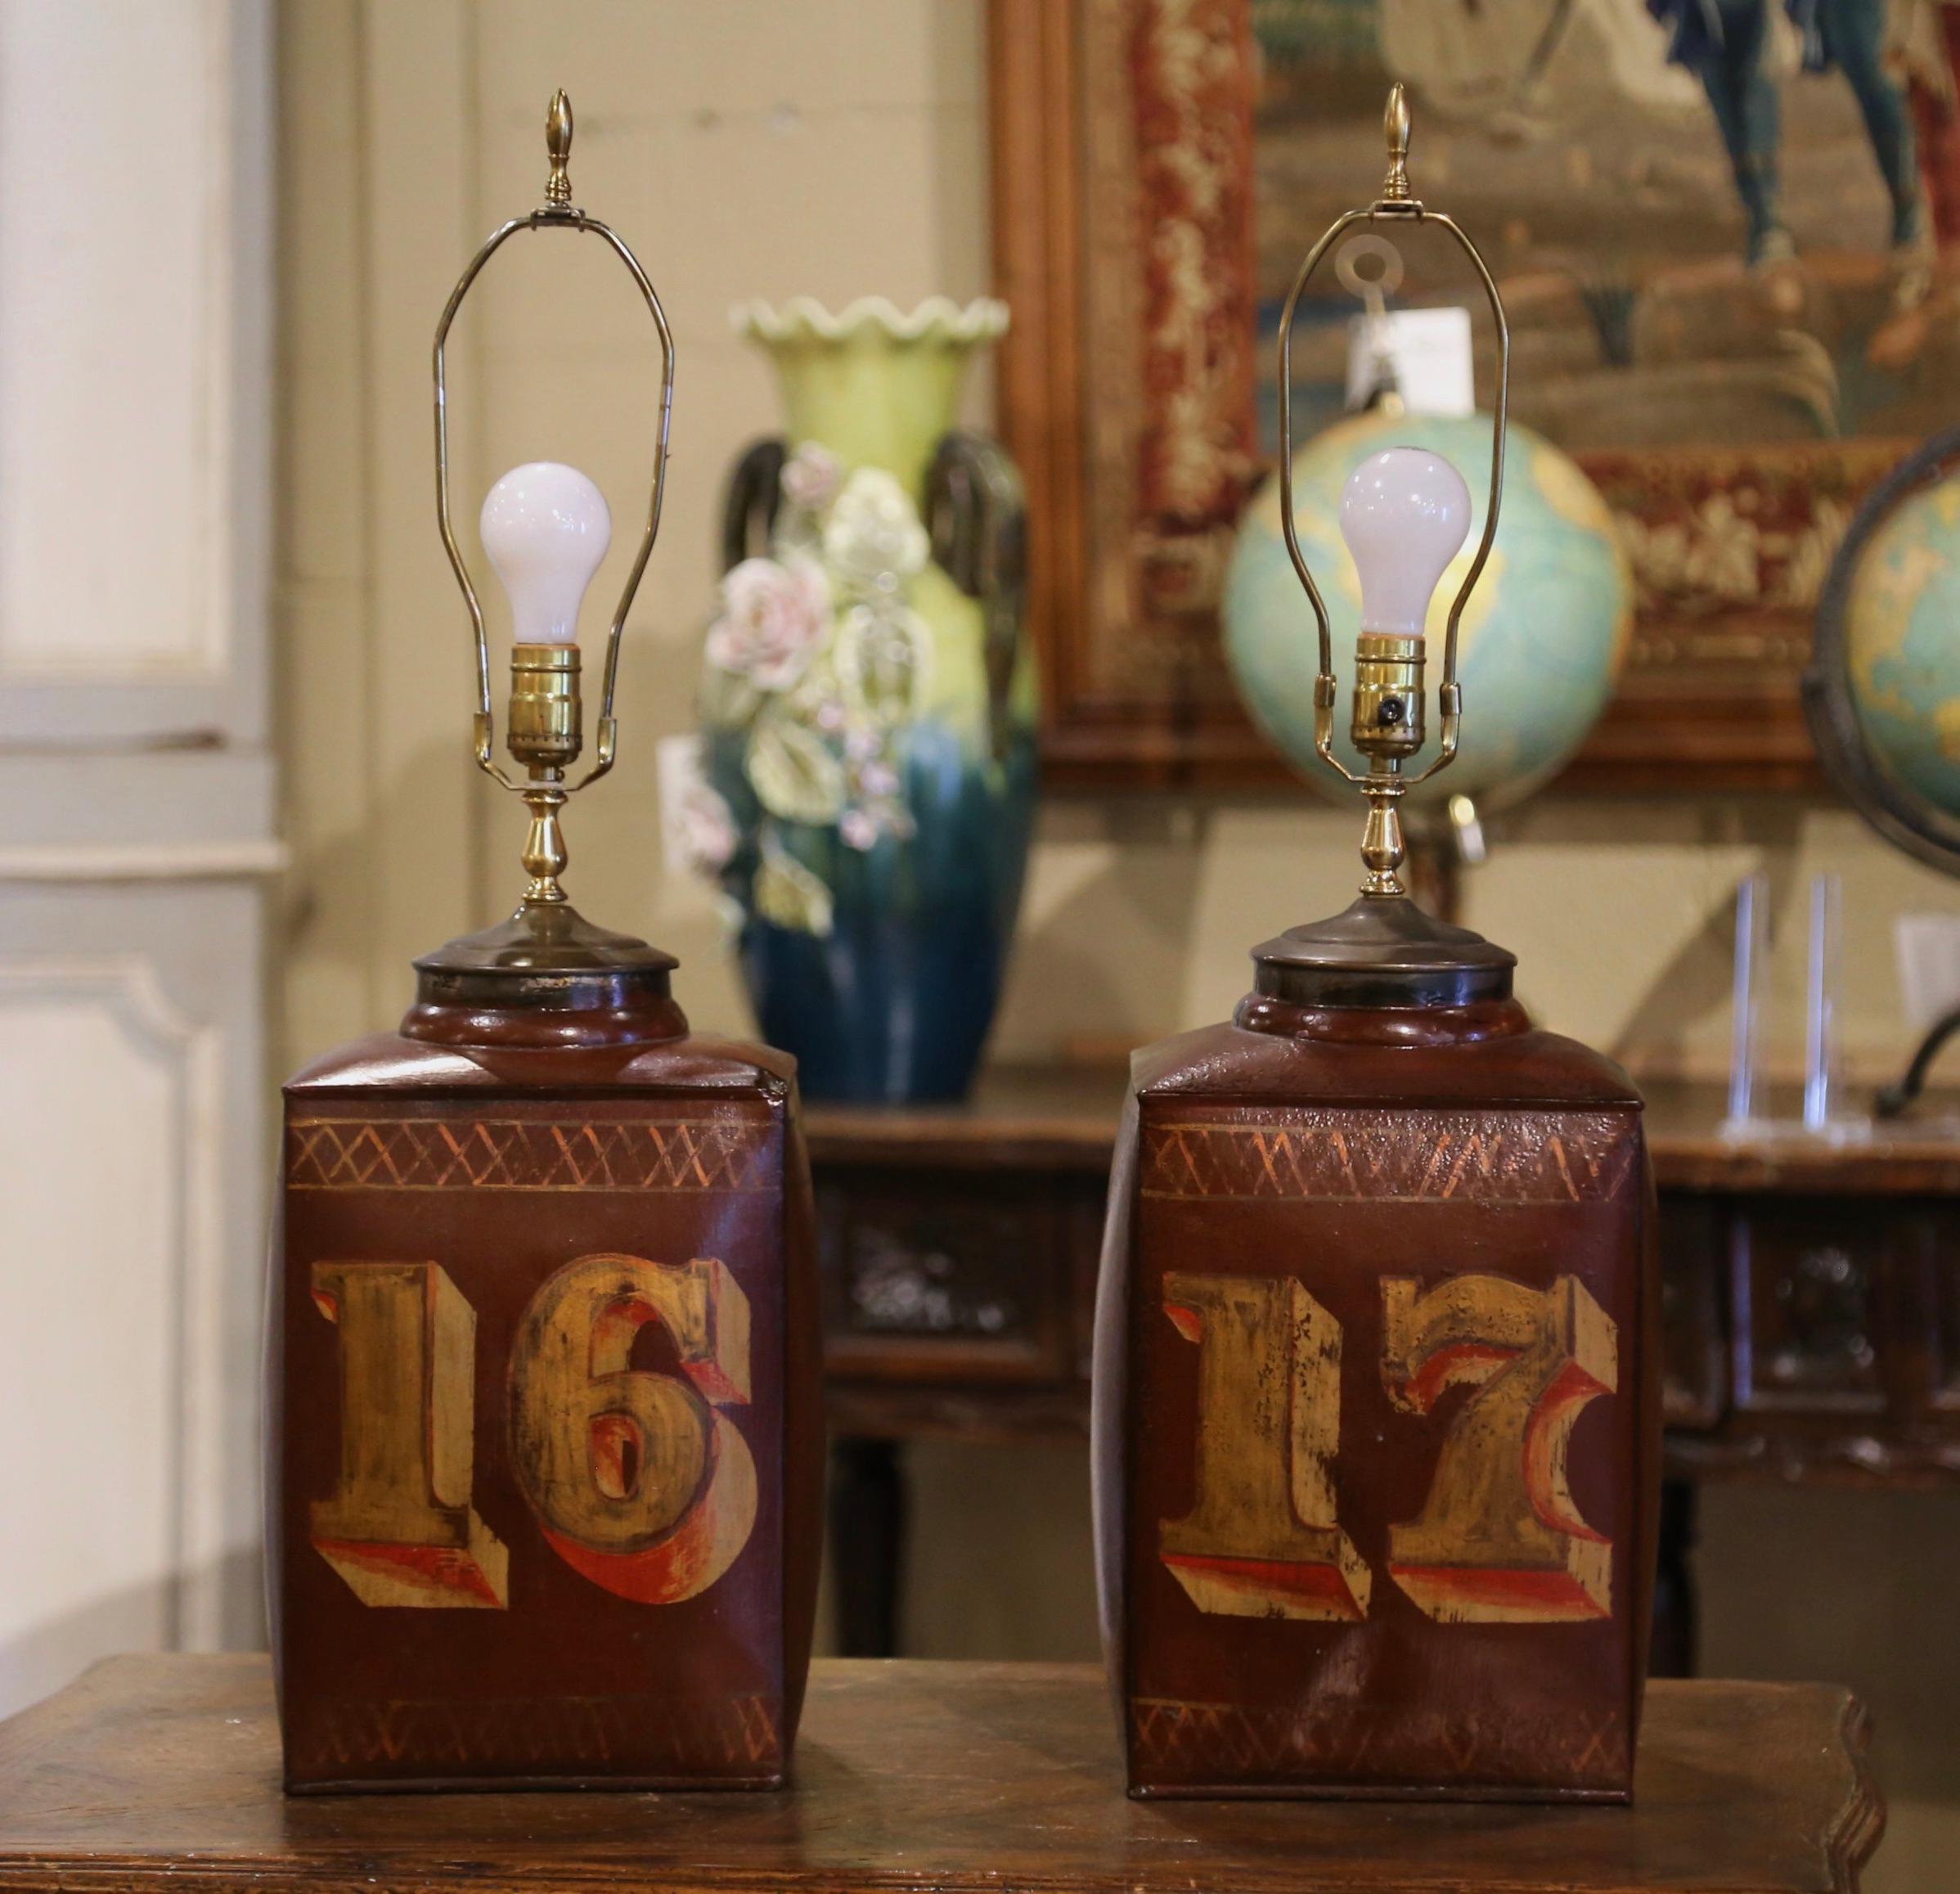 Dekorieren Sie Nachttische in einem Schlafzimmer oder Beistelltische in einem Wohnzimmer mit diesem eleganten Paar antiker Kanisterlampen. Jede der großen Teedosen, die um 1890 in England aus Zinn gefertigt wurden, ist mit einer bunten, handgemalten